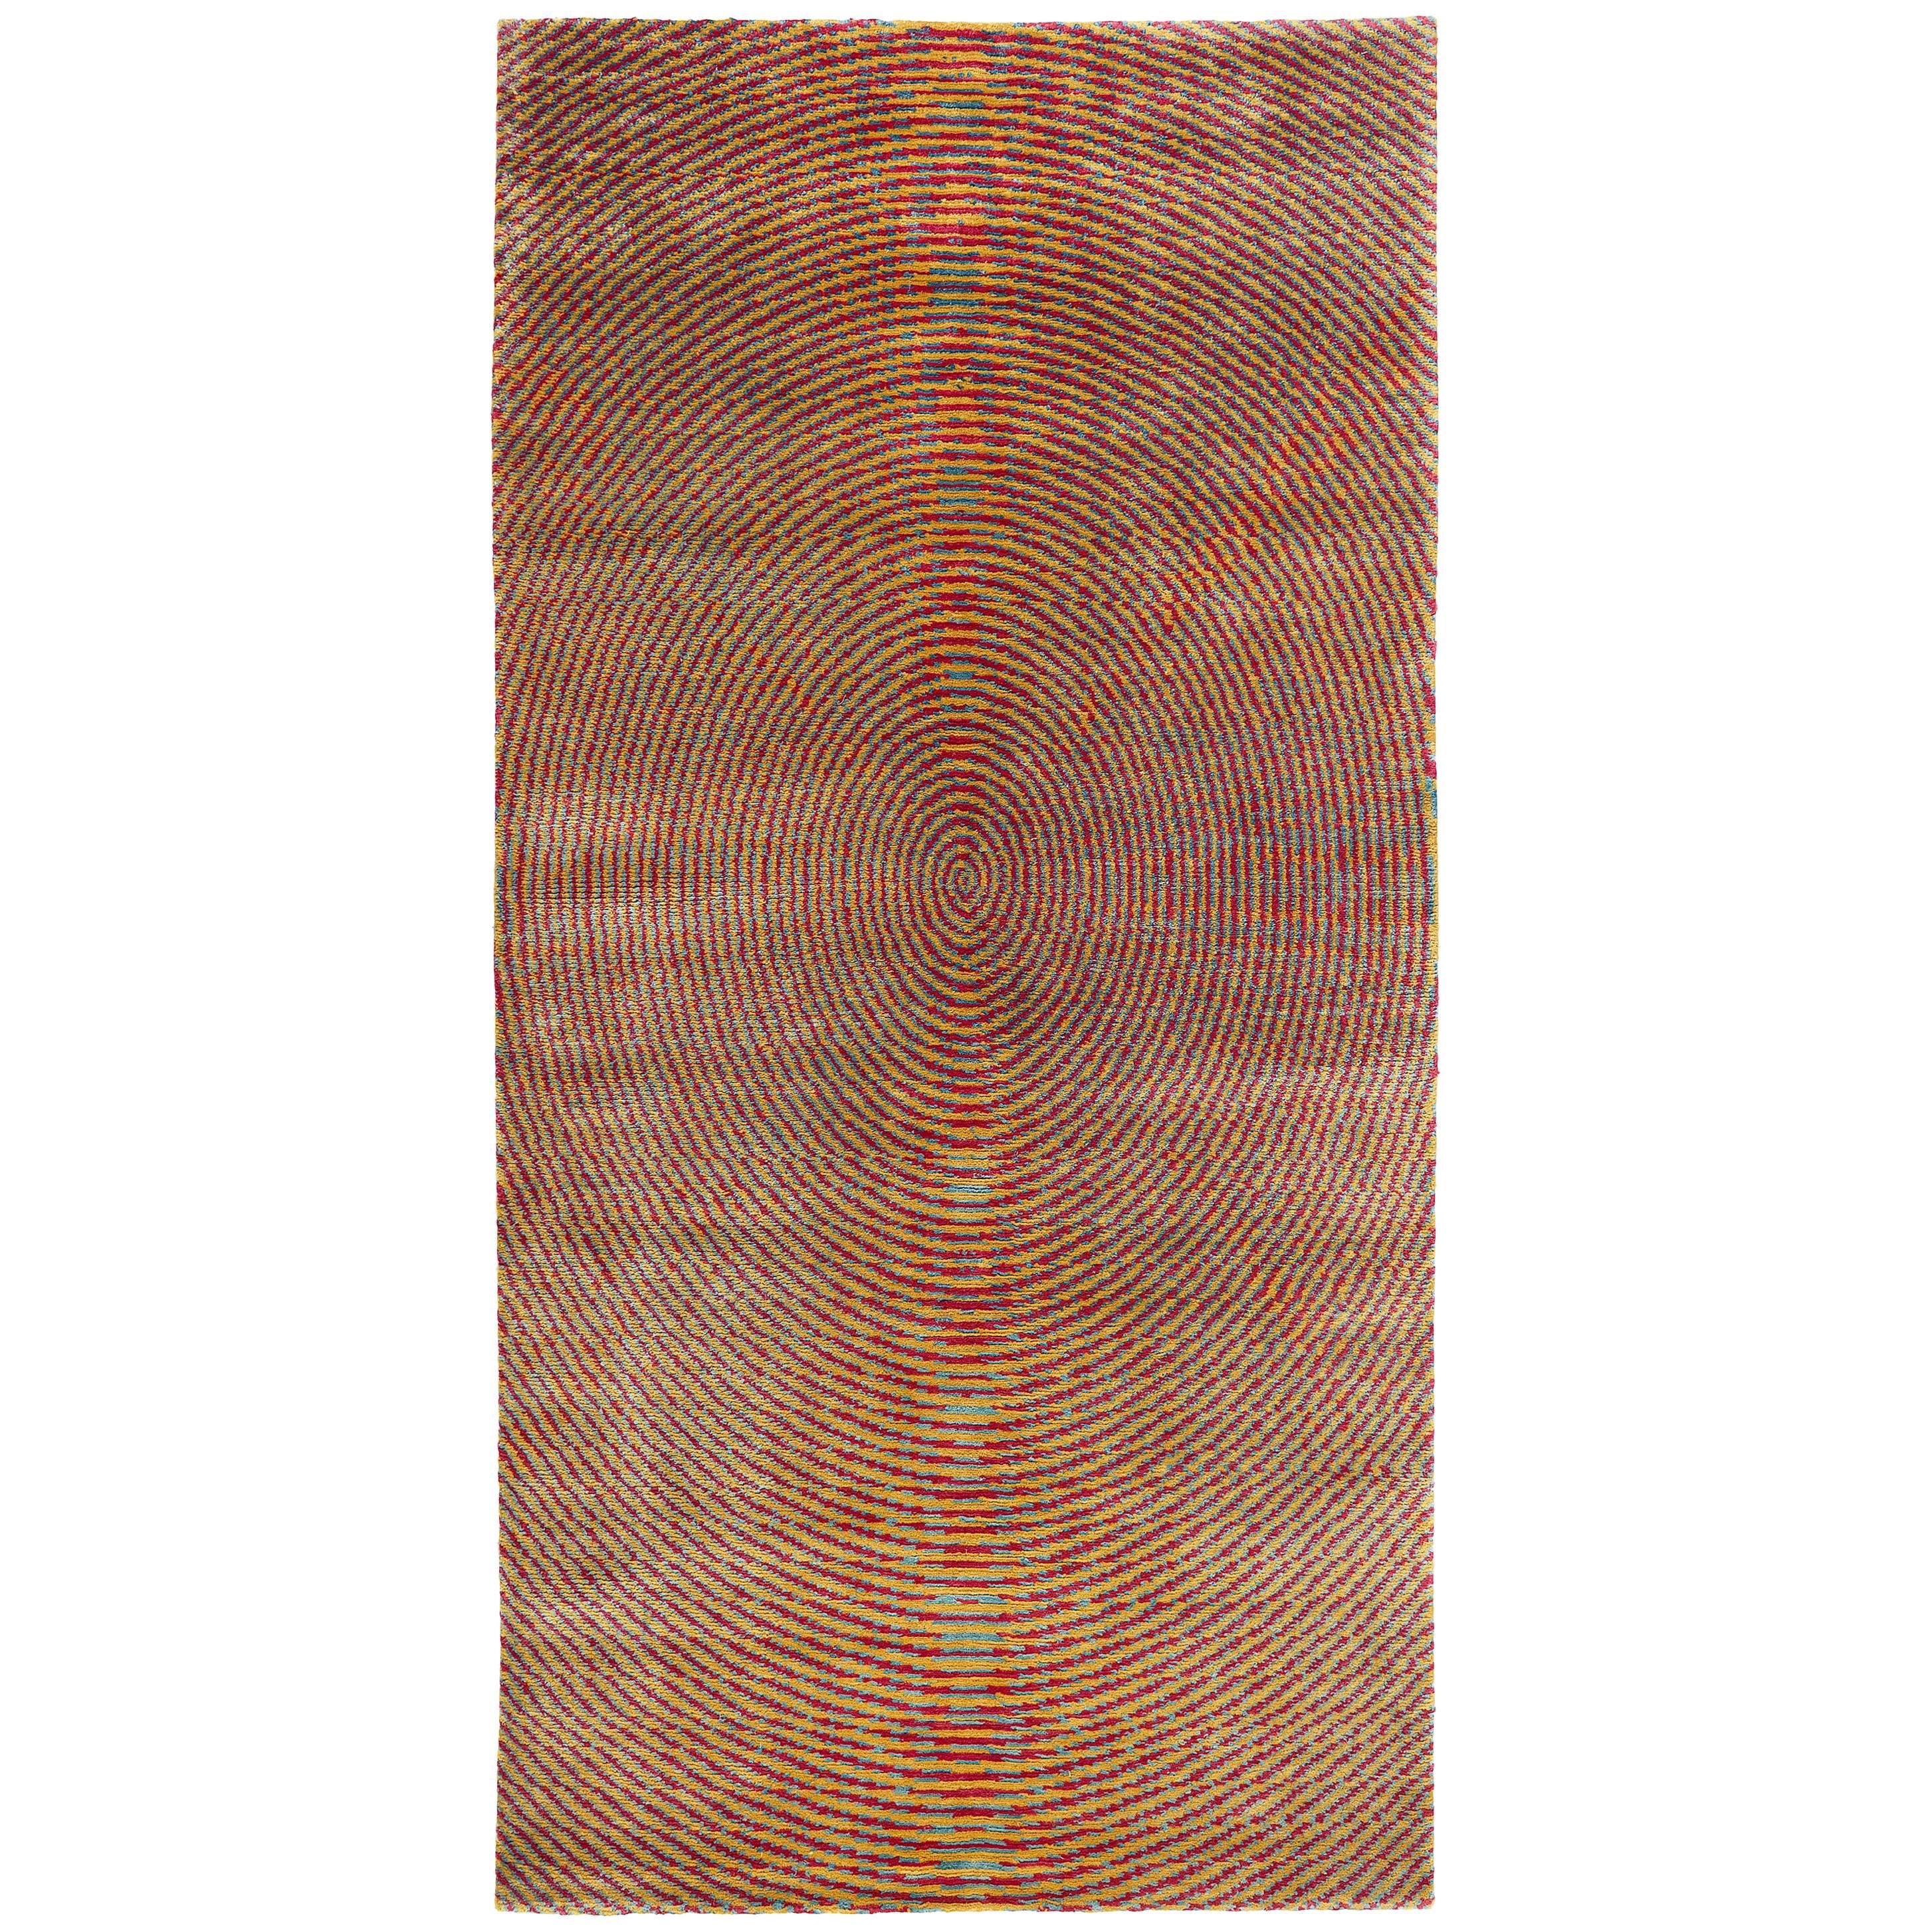  Seiden-Teppich mit botanischem Farbton von Carini, 3x6